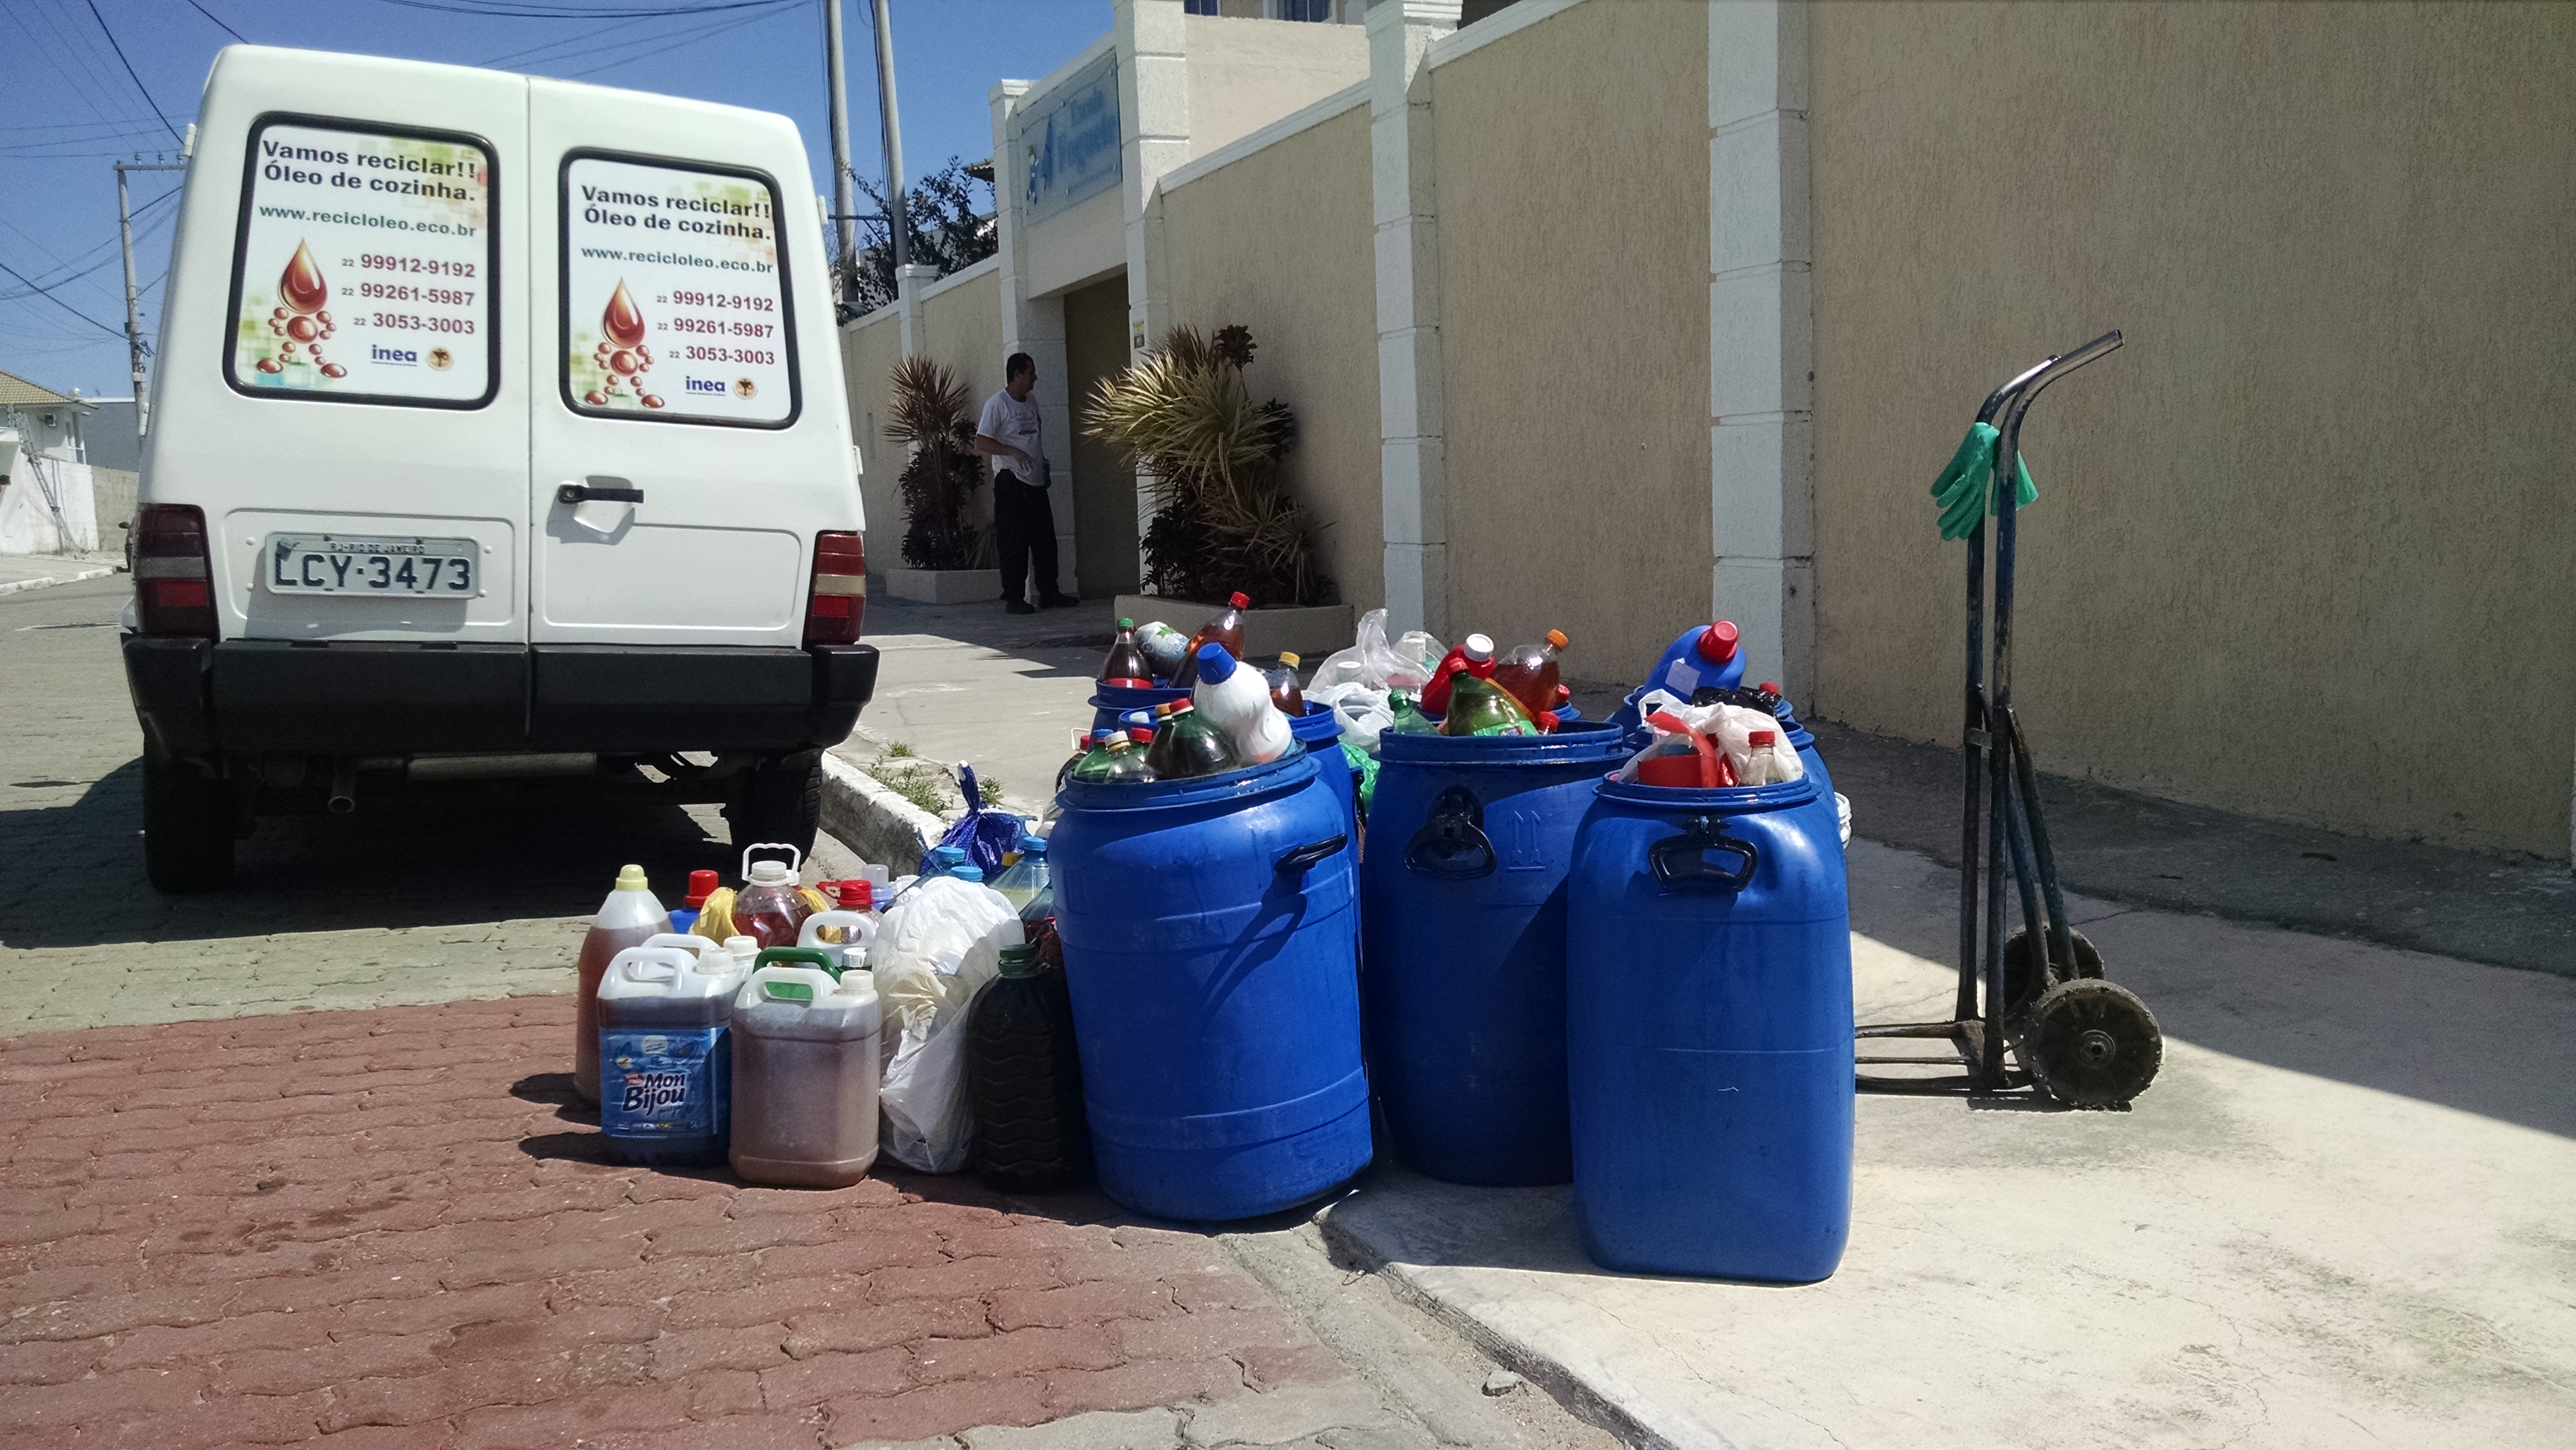 Gincana Sustentável - Escola Foguete - Reciclóleo Cabo Frio